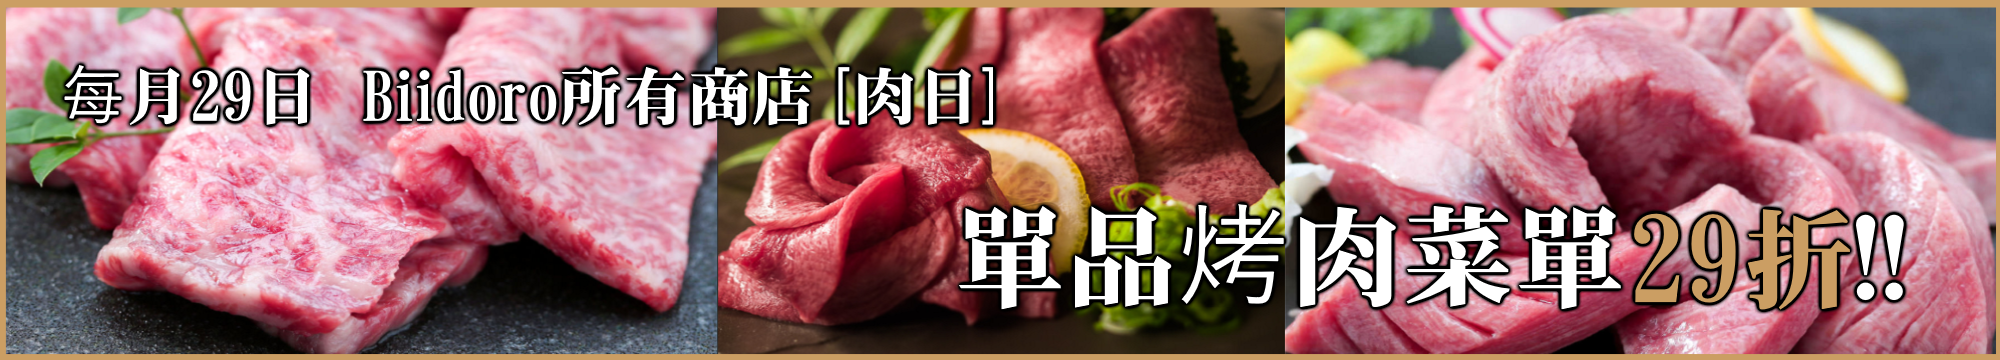 毎月29日Biidoro所有商店[肉日]　單品烤肉菜單29折!!